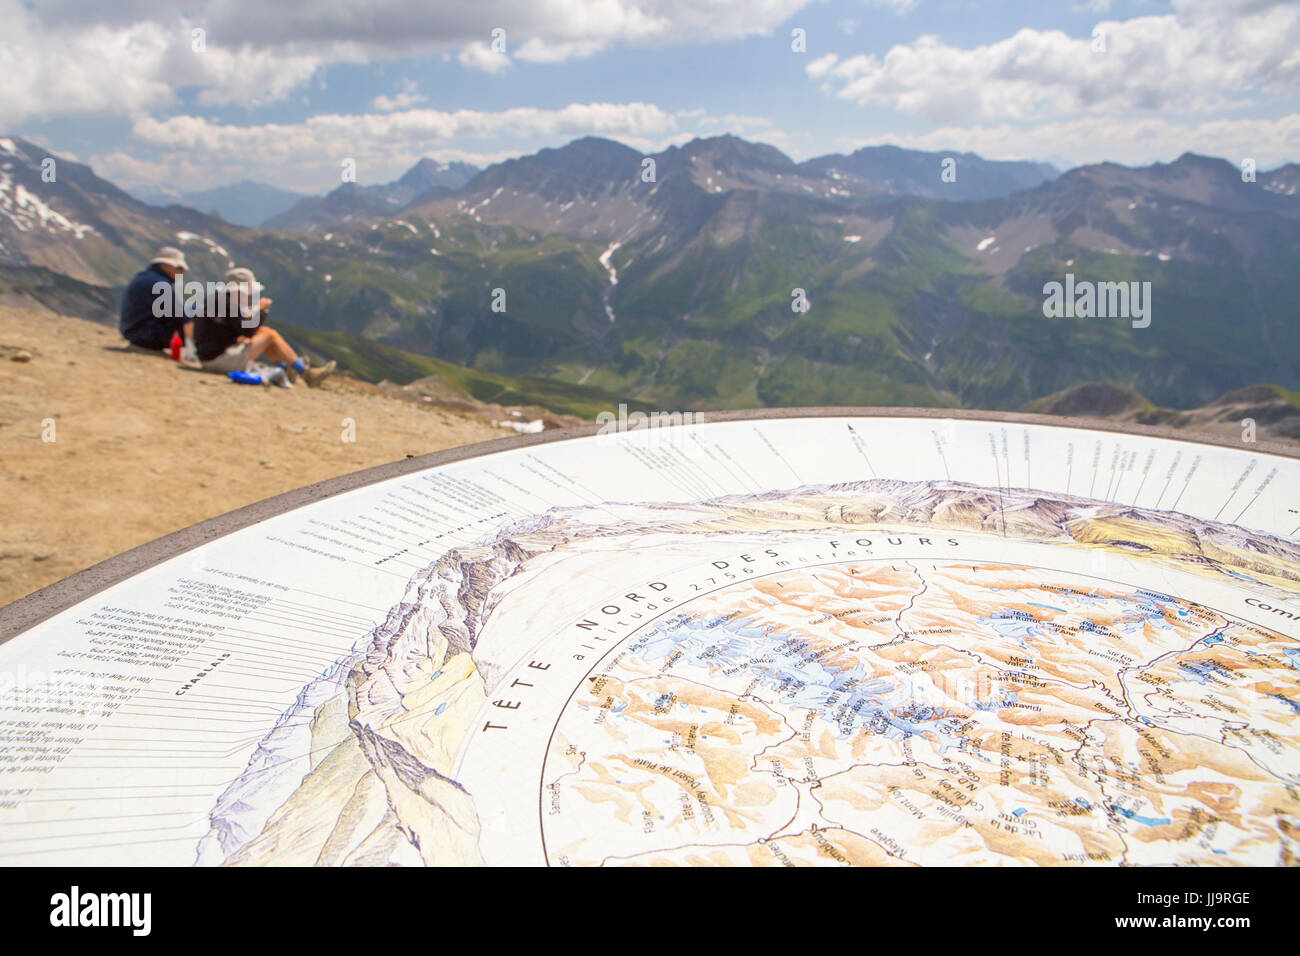 Une tablette avec le panorama sur le sommet de la tête des fours avec Mont Blanc au loin. C'est à mi-chemin le Tour du Mont Blanc, un classique de plusieurs journées de marche autour du plus haut sommet des Alpes. Banque D'Images